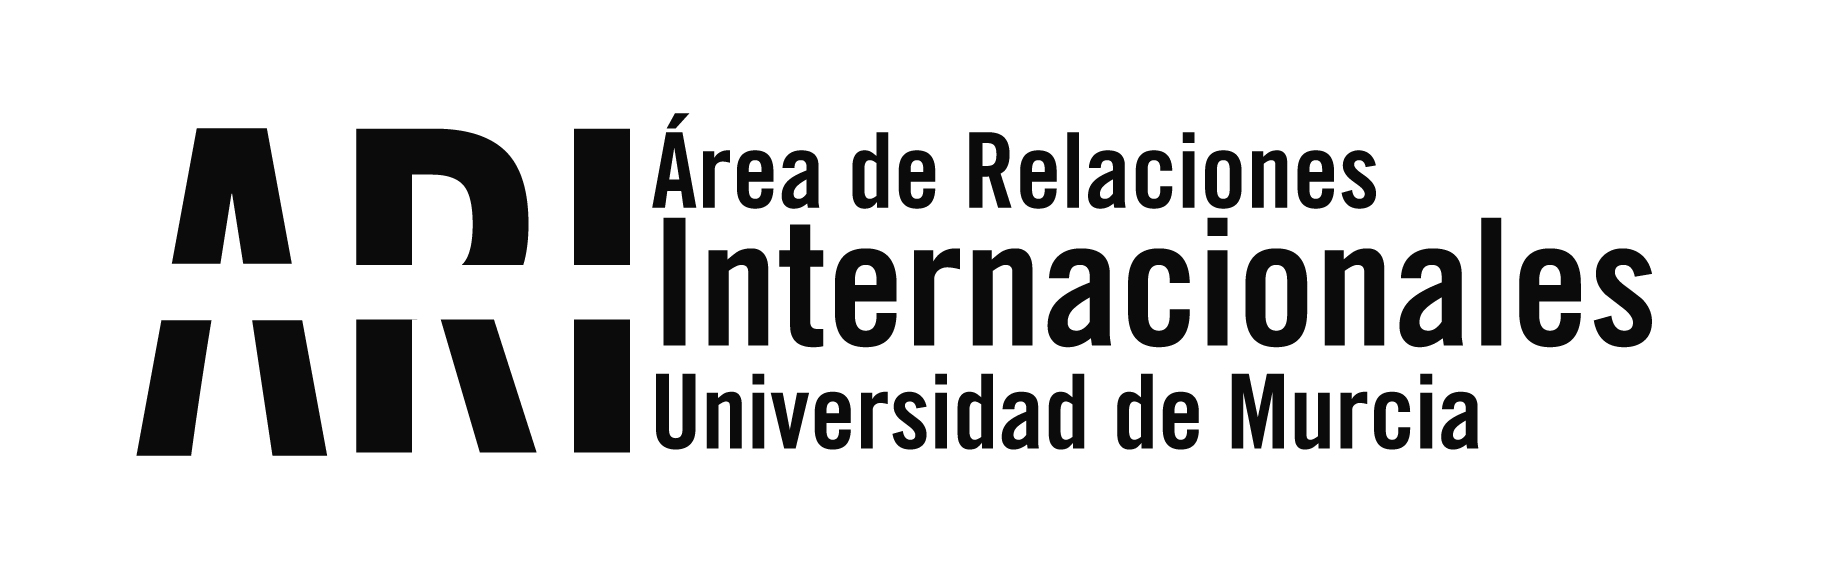 La UMU participa en Huelva en las Jornadas de movilidad Erasmus+ de Educación Superior - Área de Relaciones Internacionales